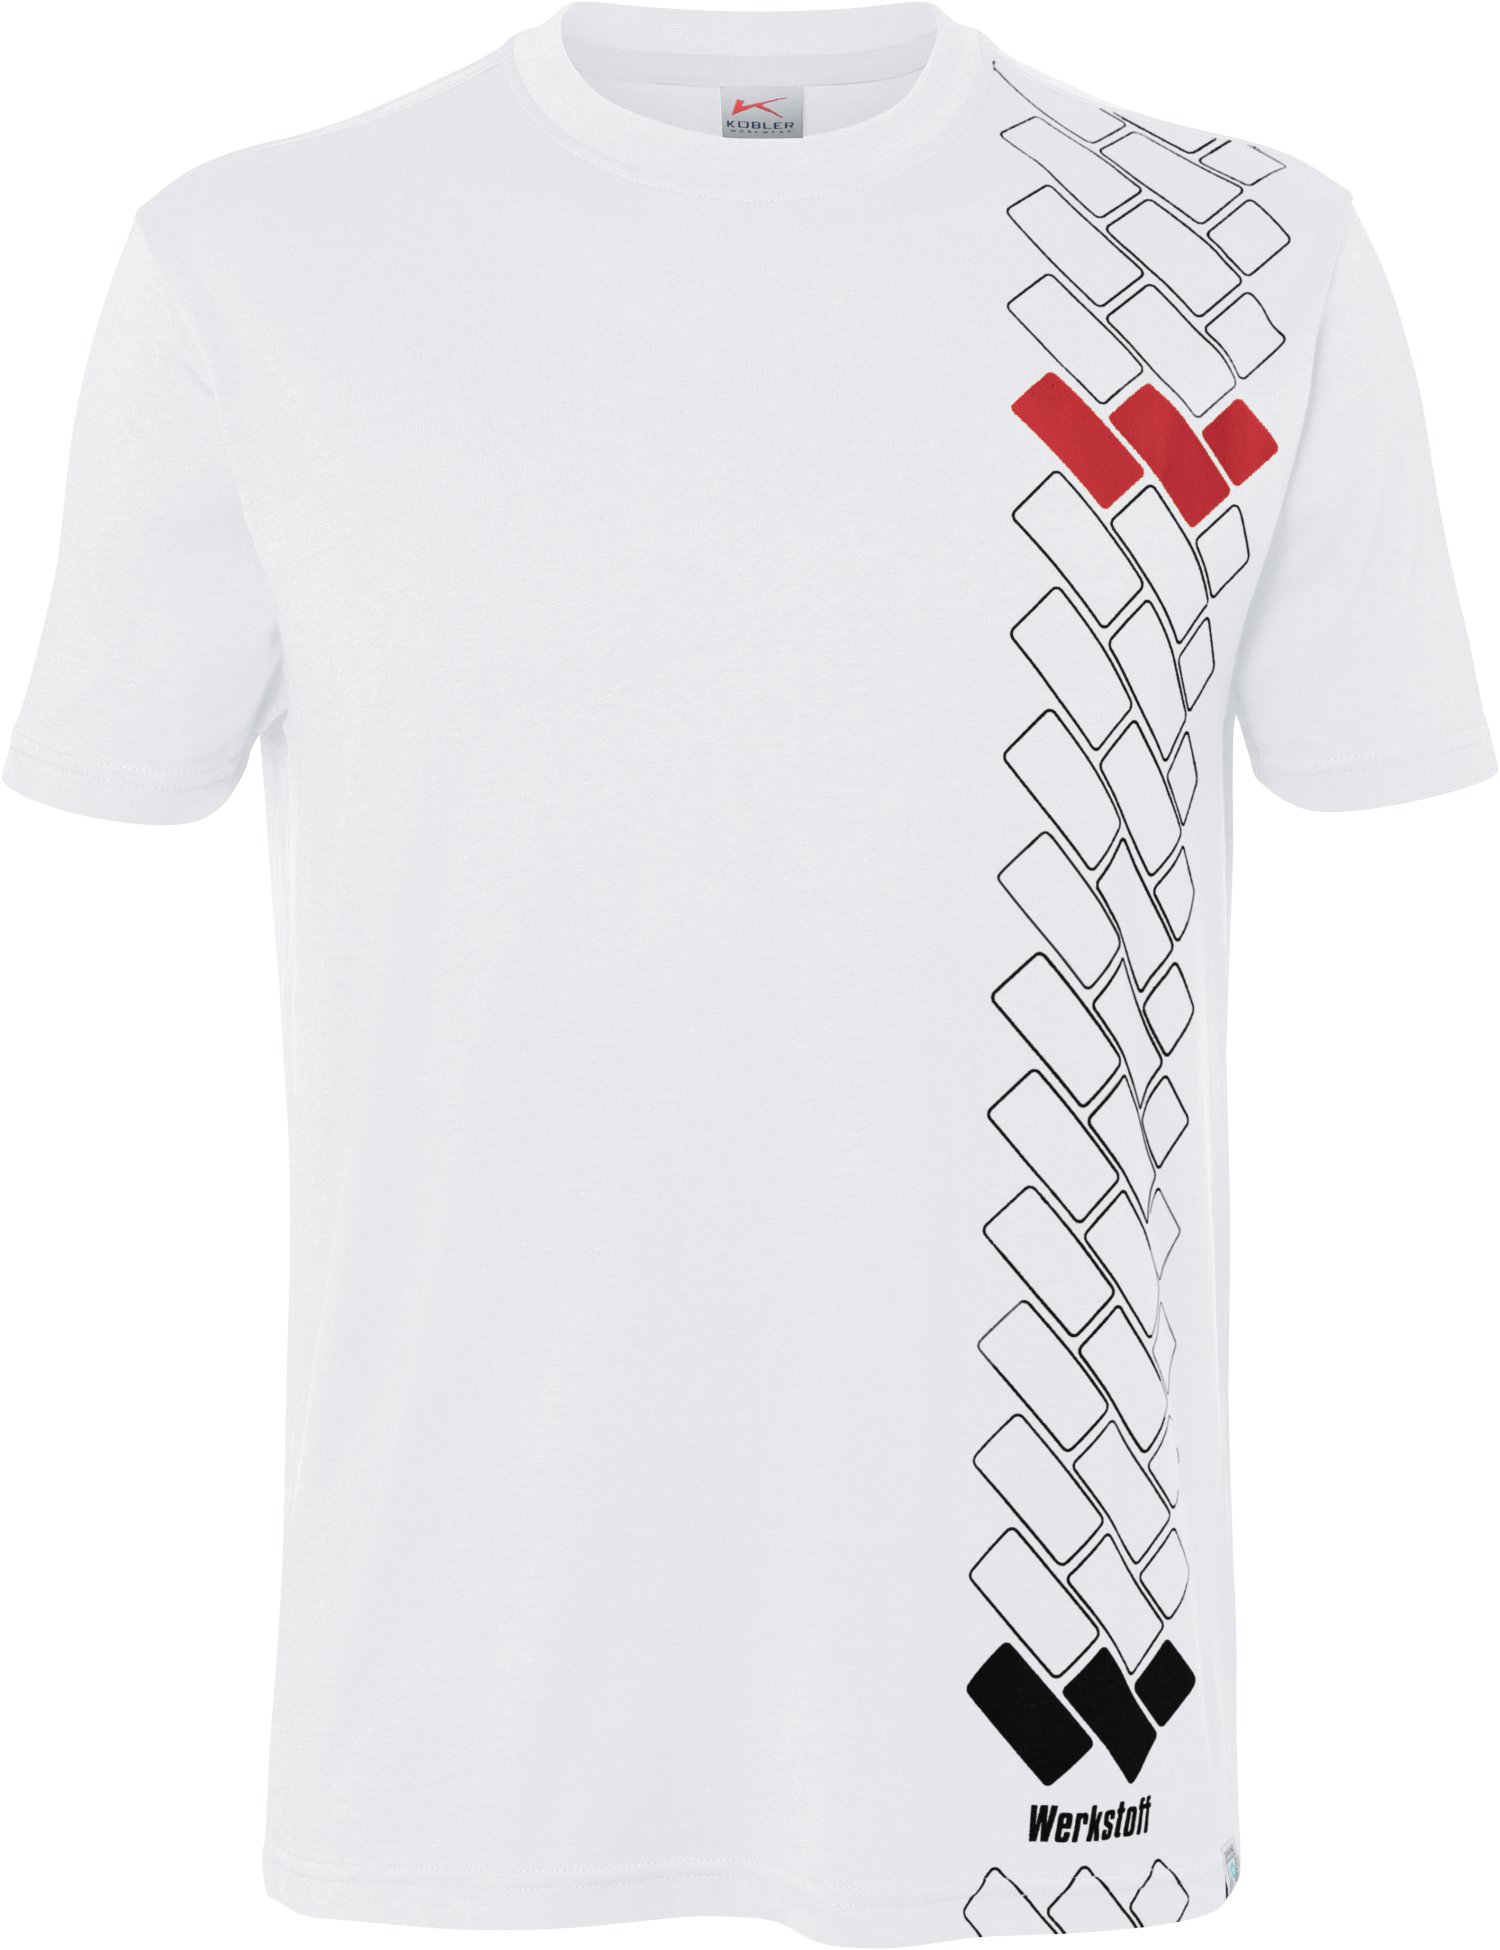 WERKSTOFF T-Shirt Premium weiß XL